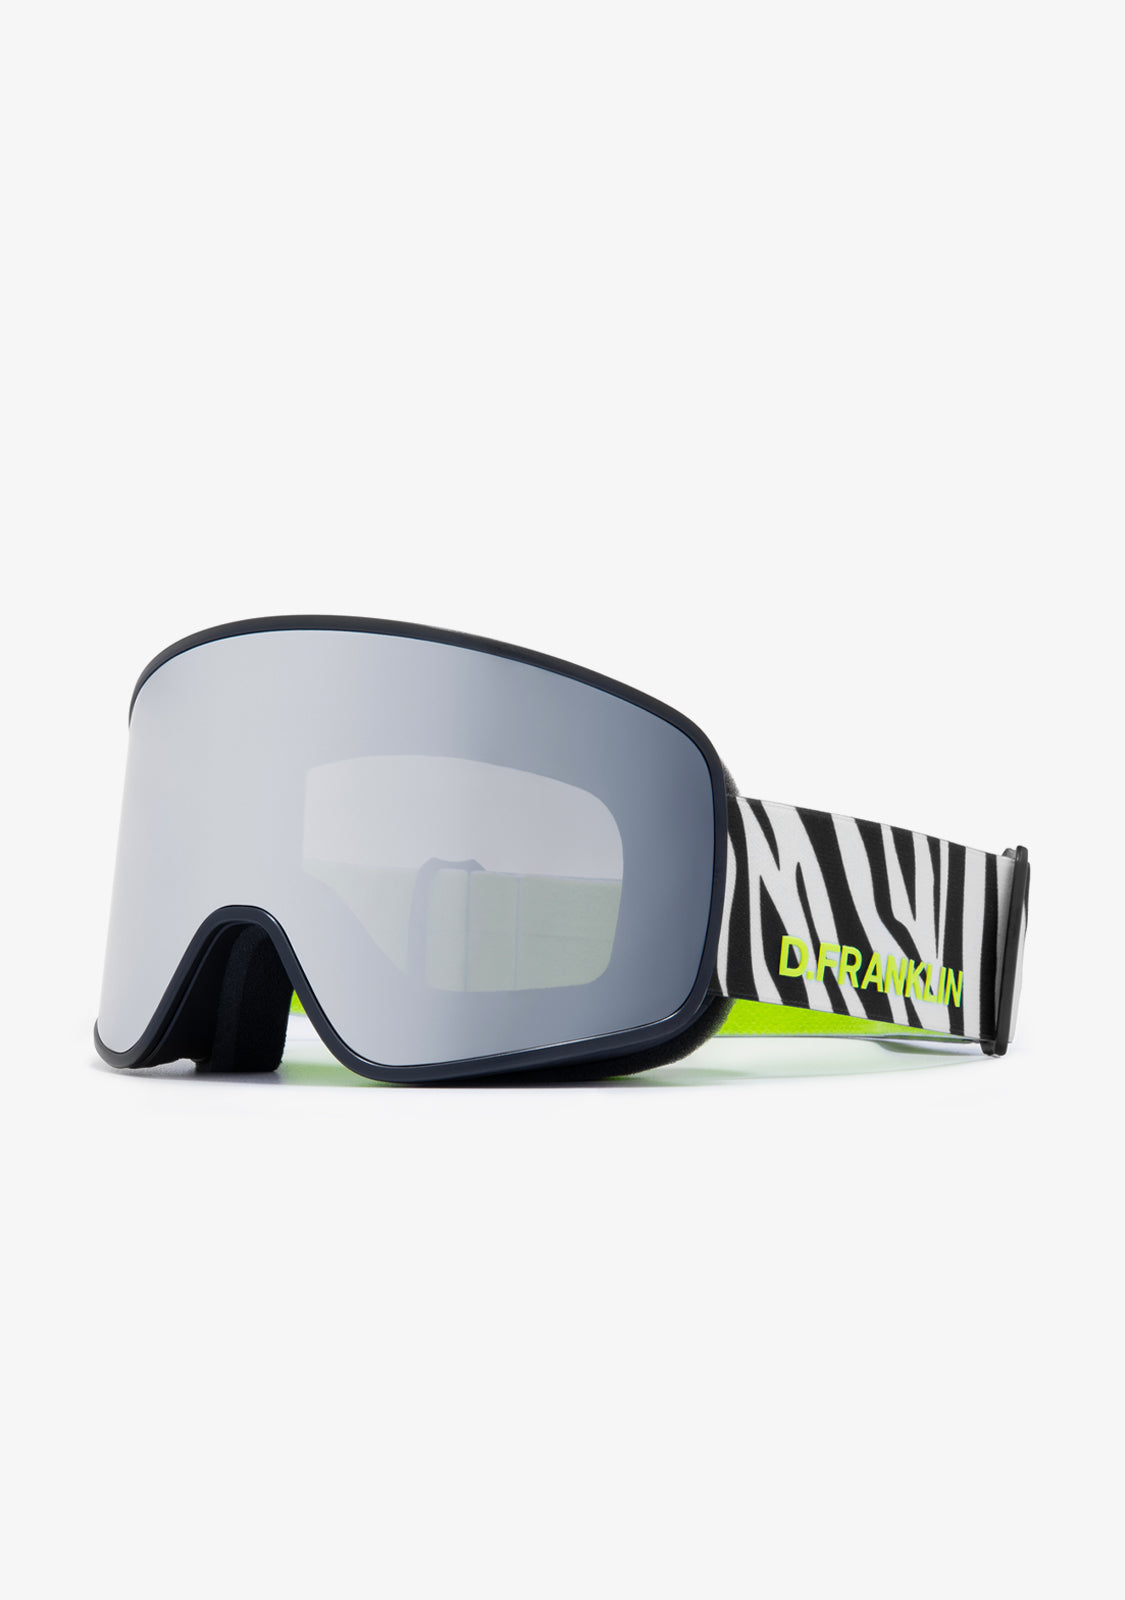 Lunettes de ski - Surlunettes lunettes de ski/snowboard pour hommes, femmes  et jeunes - protection UV 100 % - Chine Des lunettes de sécurité pour les  hommes au cours de verres et